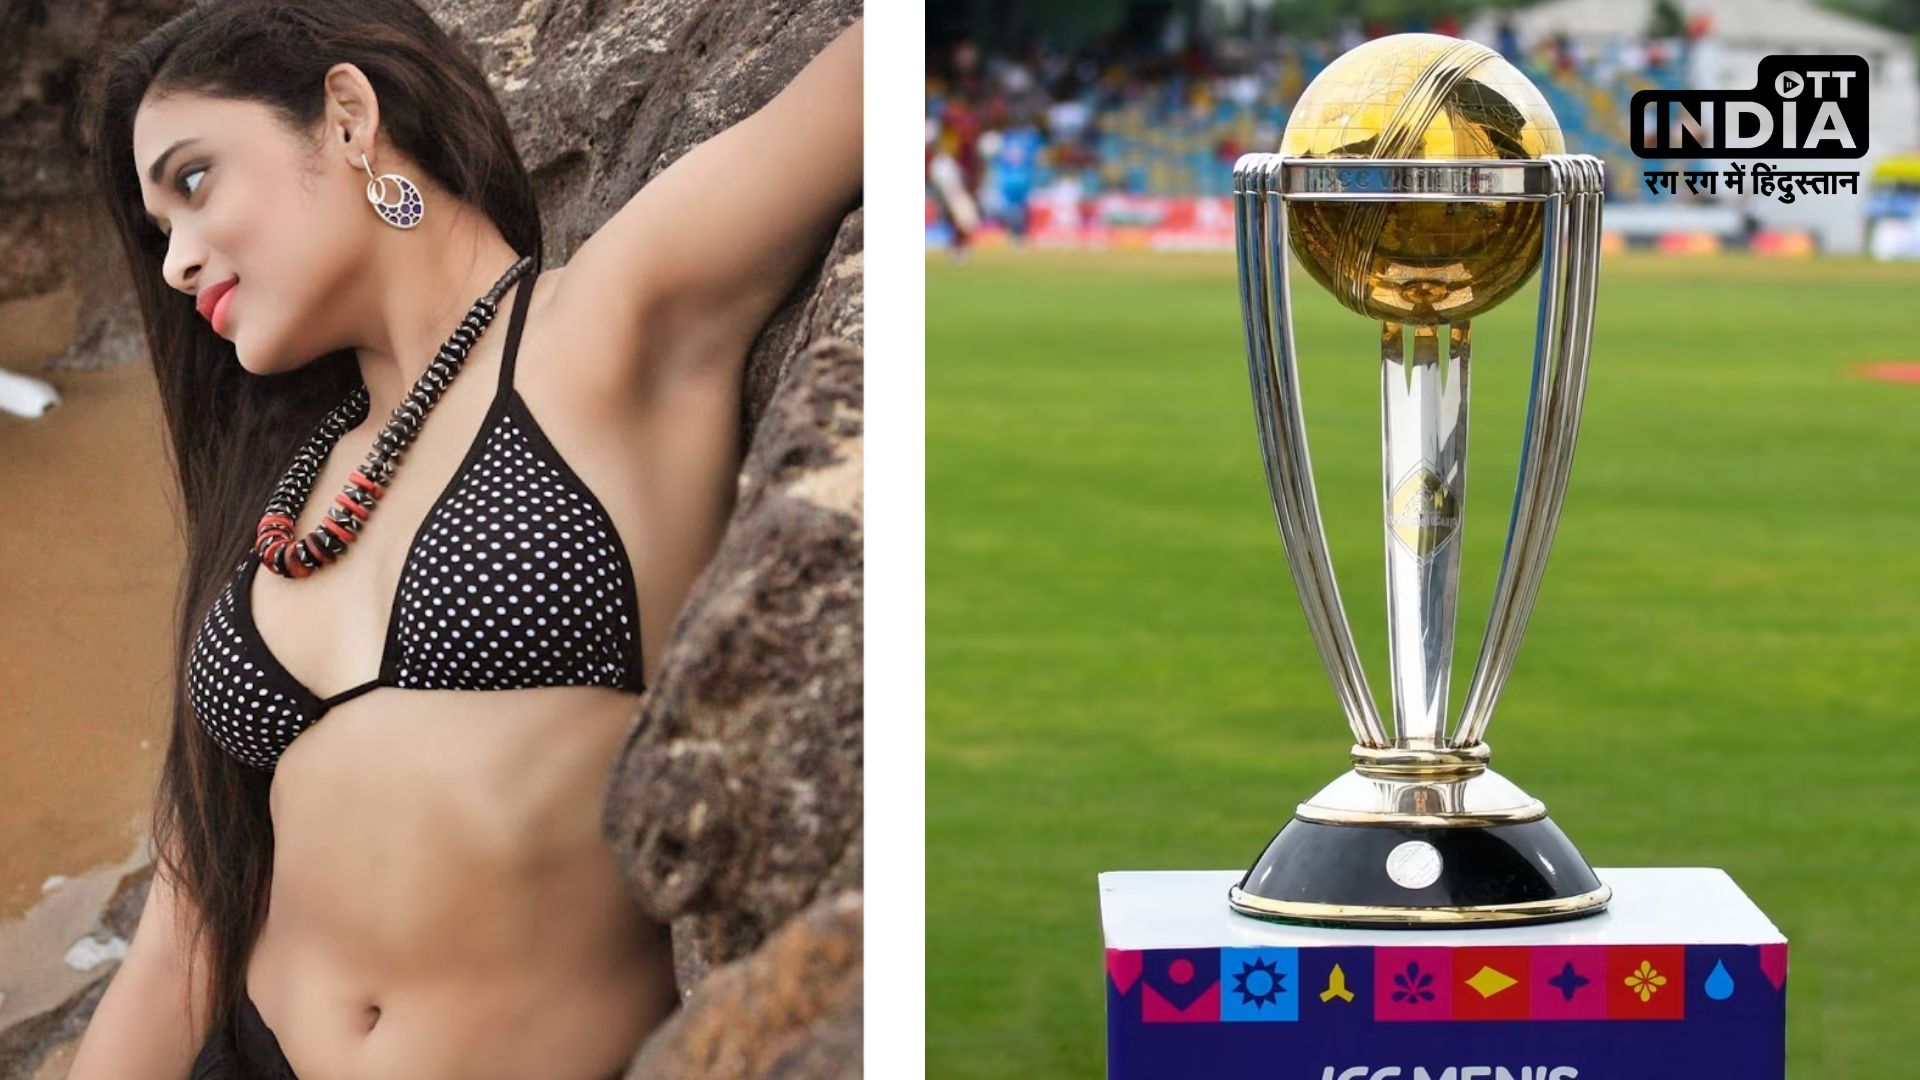 World Cup : अगर इंडिया वर्ल्डकप जीती तो कपड़े उतारकर दौड़ूंगी, इस साउथ एक्ट्रेस ने किया बड़ा ऐलान…